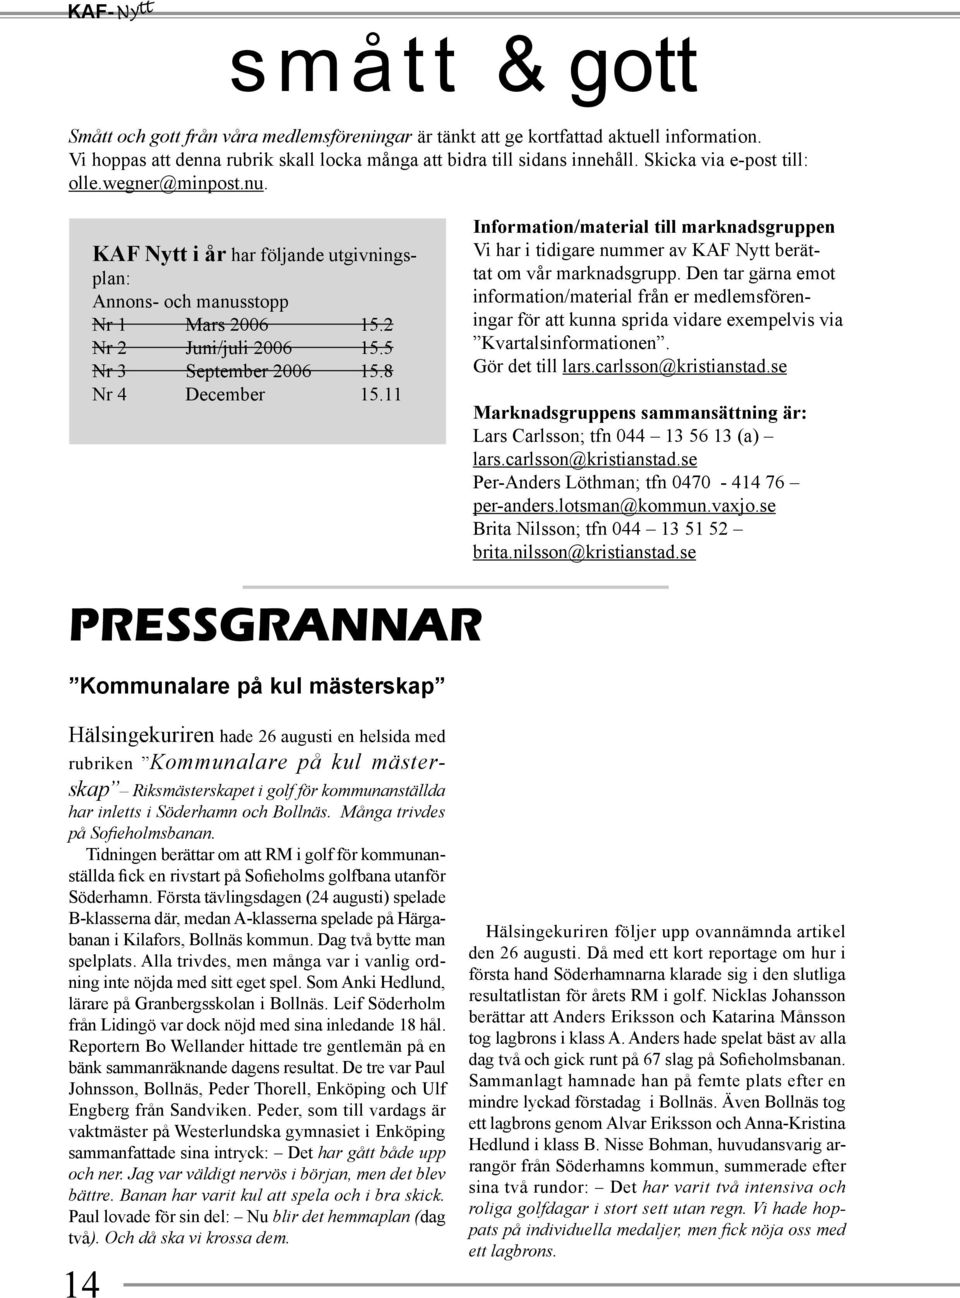 8 Nr 4 December 15.11 Information/material till marknadsgruppen Vi har i tidigare nummer av KAF Nytt berättat om vår marknadsgrupp.